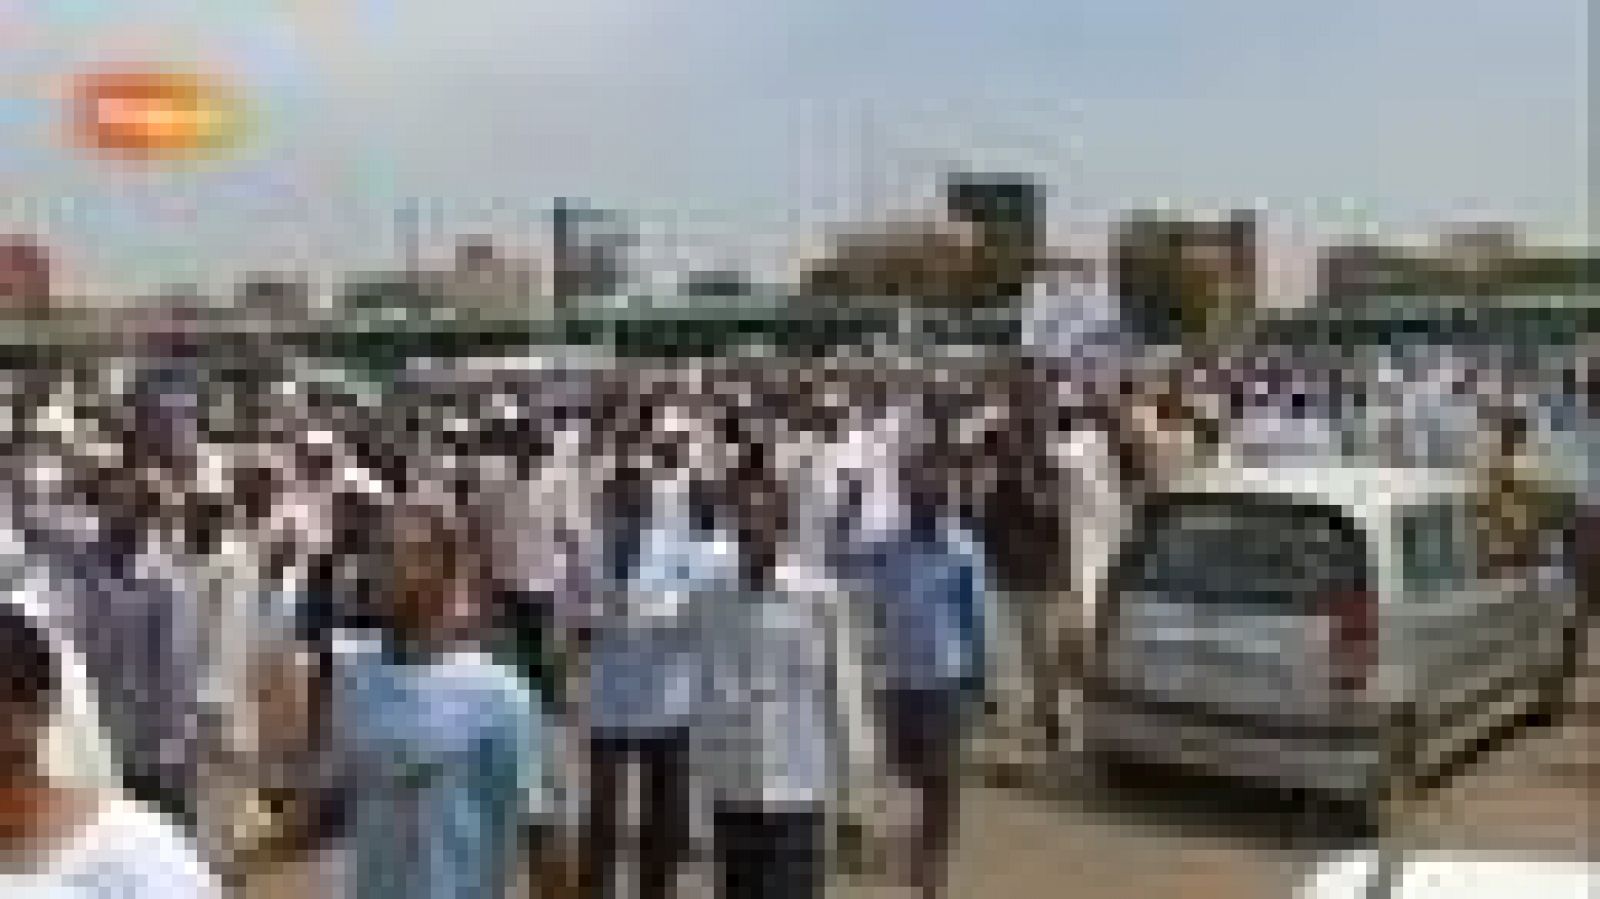  Al menos tres personas murieron hoy y más de 40 resultaron heridas durante los enfrentamientos entre la policía y manifestantes junto a la embajada de EEUU en Sudán, según  uno de los organizadores de la protesta, Mohamed Abderrahim.